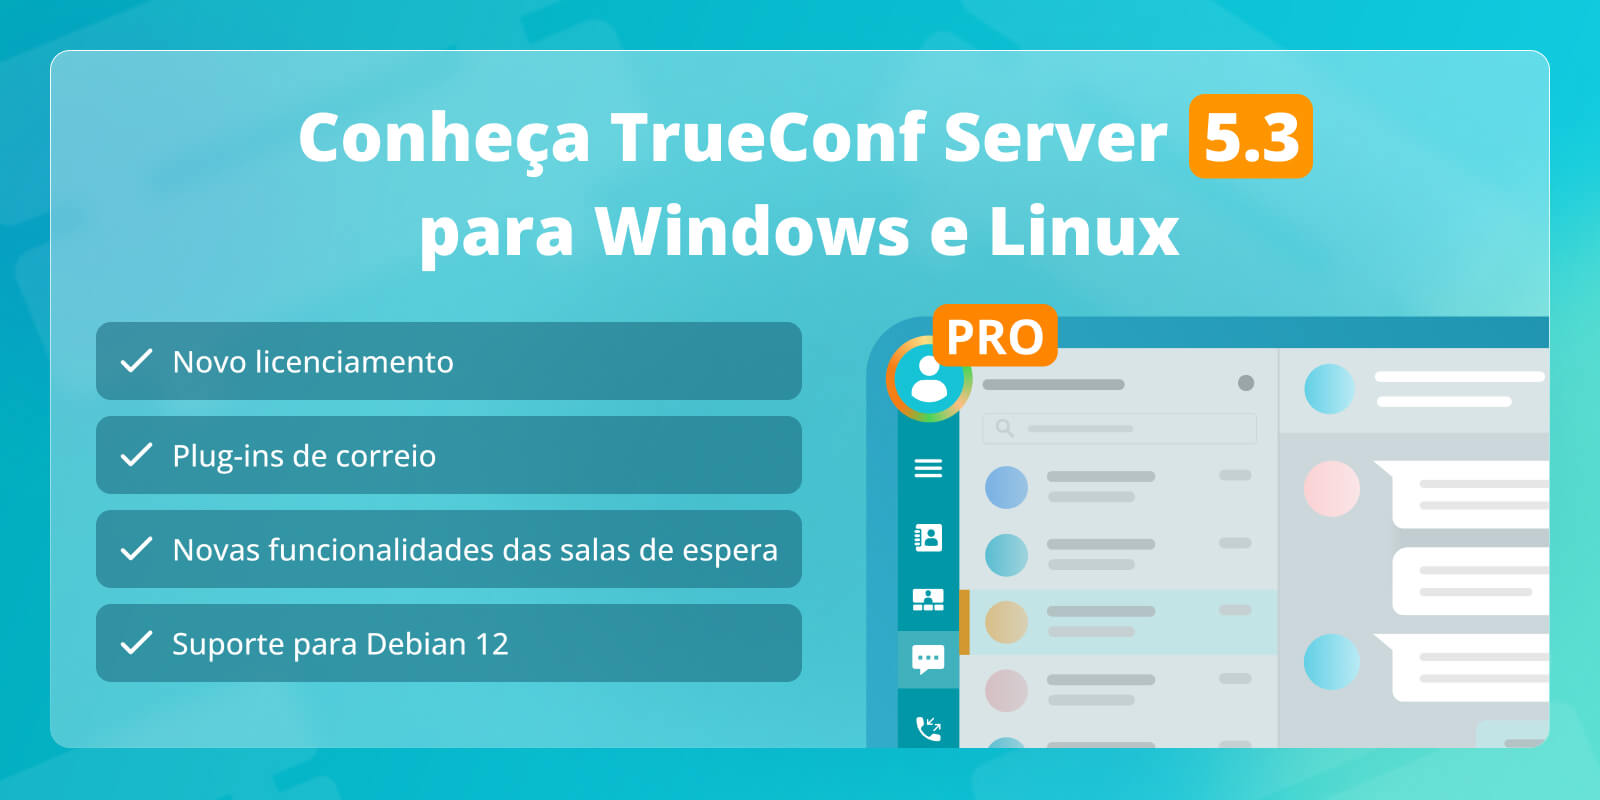 Atualização principal do TrueConf Server 5.3: novo licenciamento, plug-ins de e-mail e suporte para Debian 12 4